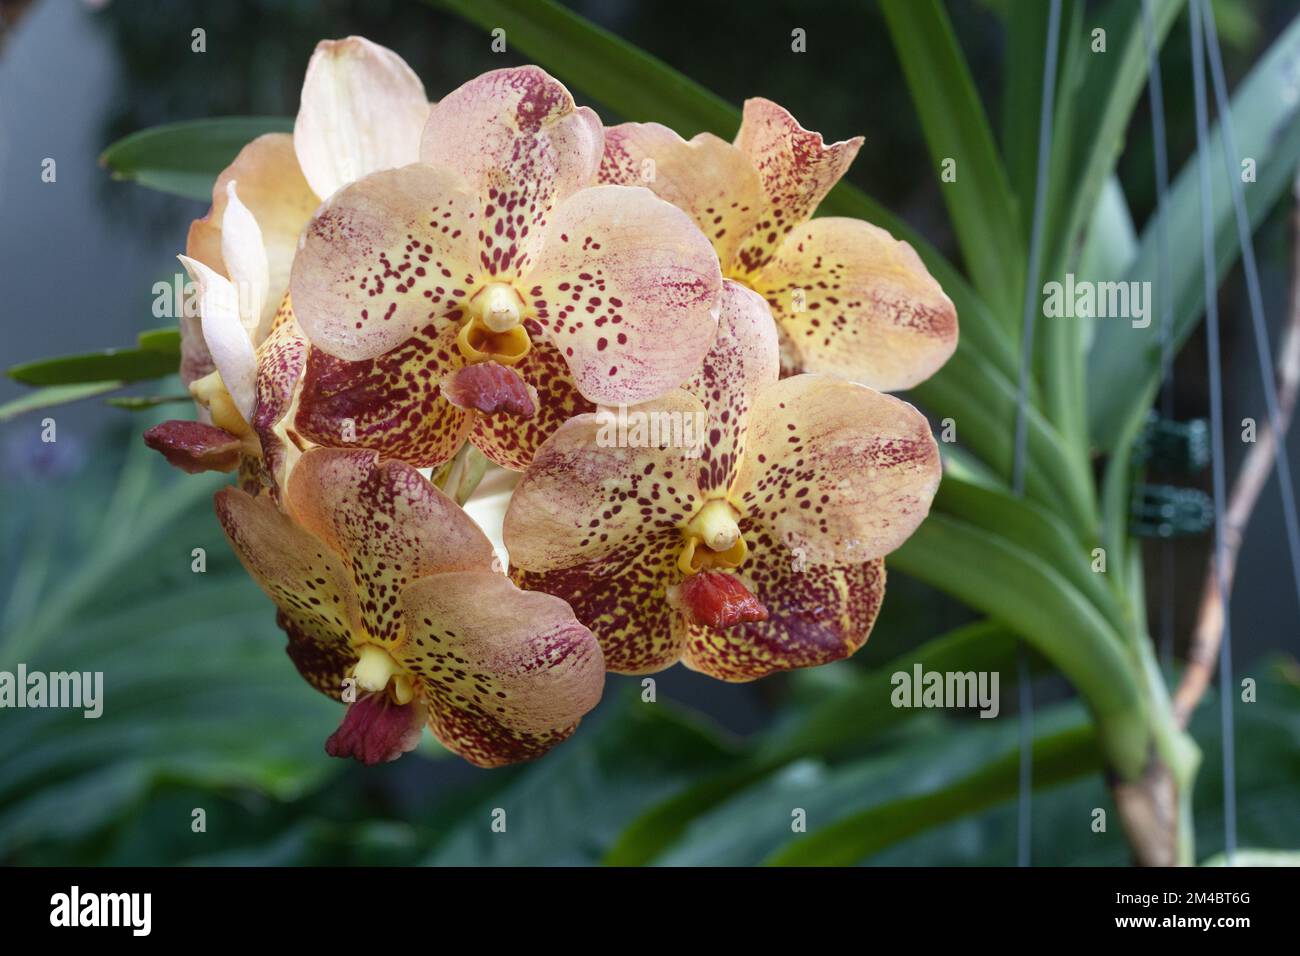 Vanda sanchai gold spots no 9 orchid flowers. Stock Photo